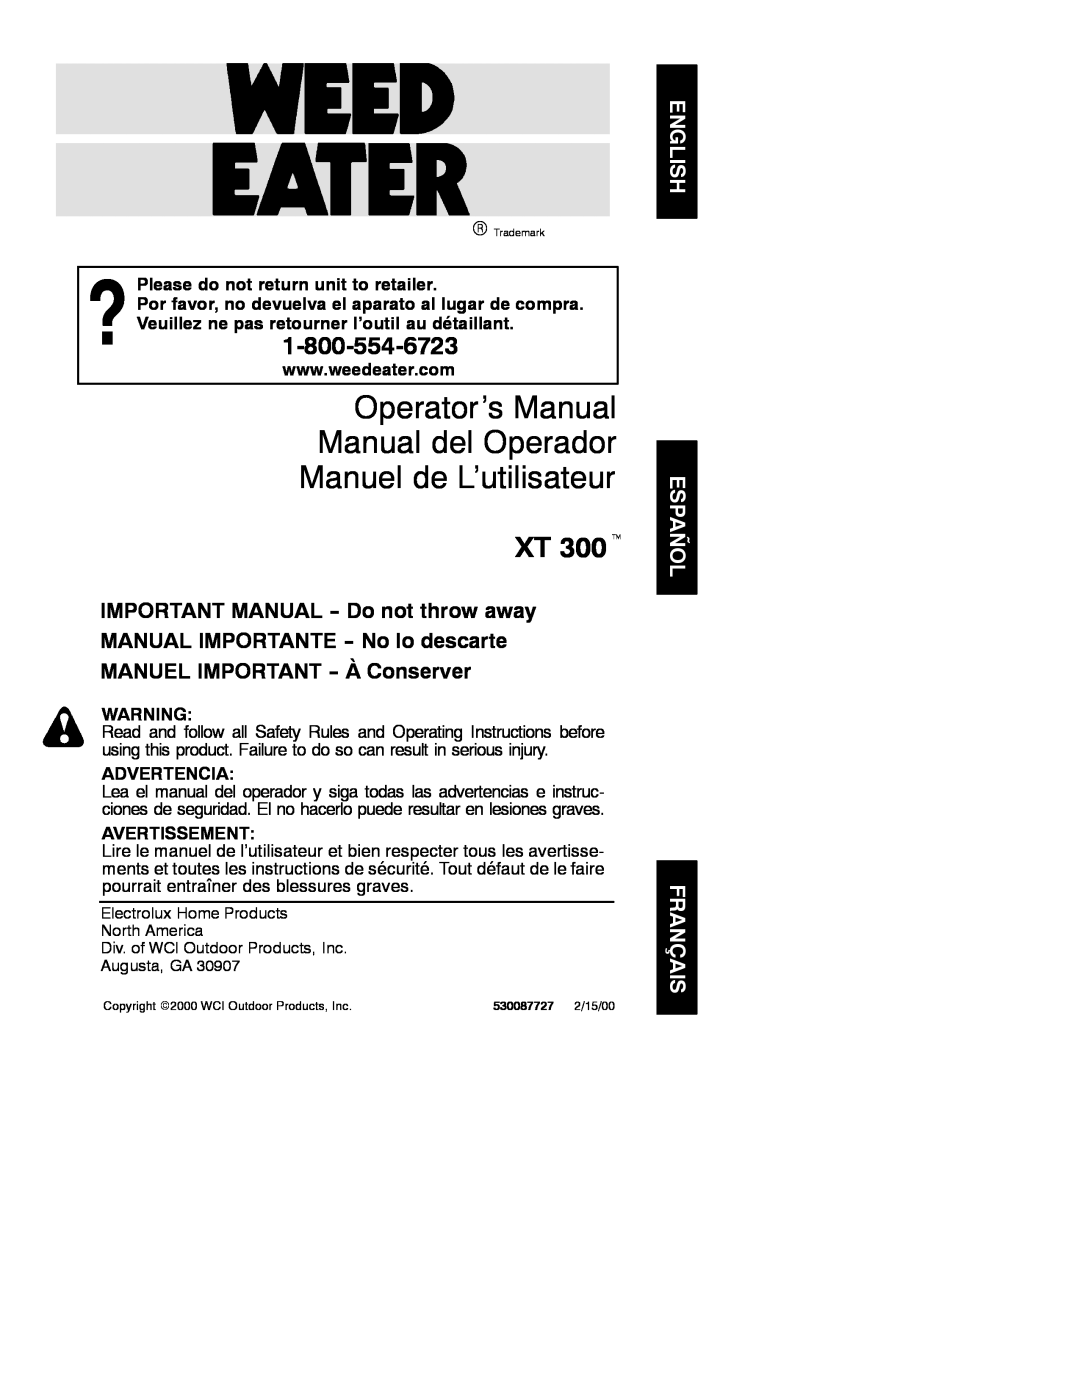 Weed Eater 530087727 manual Operator’s Manual Manual del Operador, Manuel de L’utilisateur, XT 300t, Advertencia 